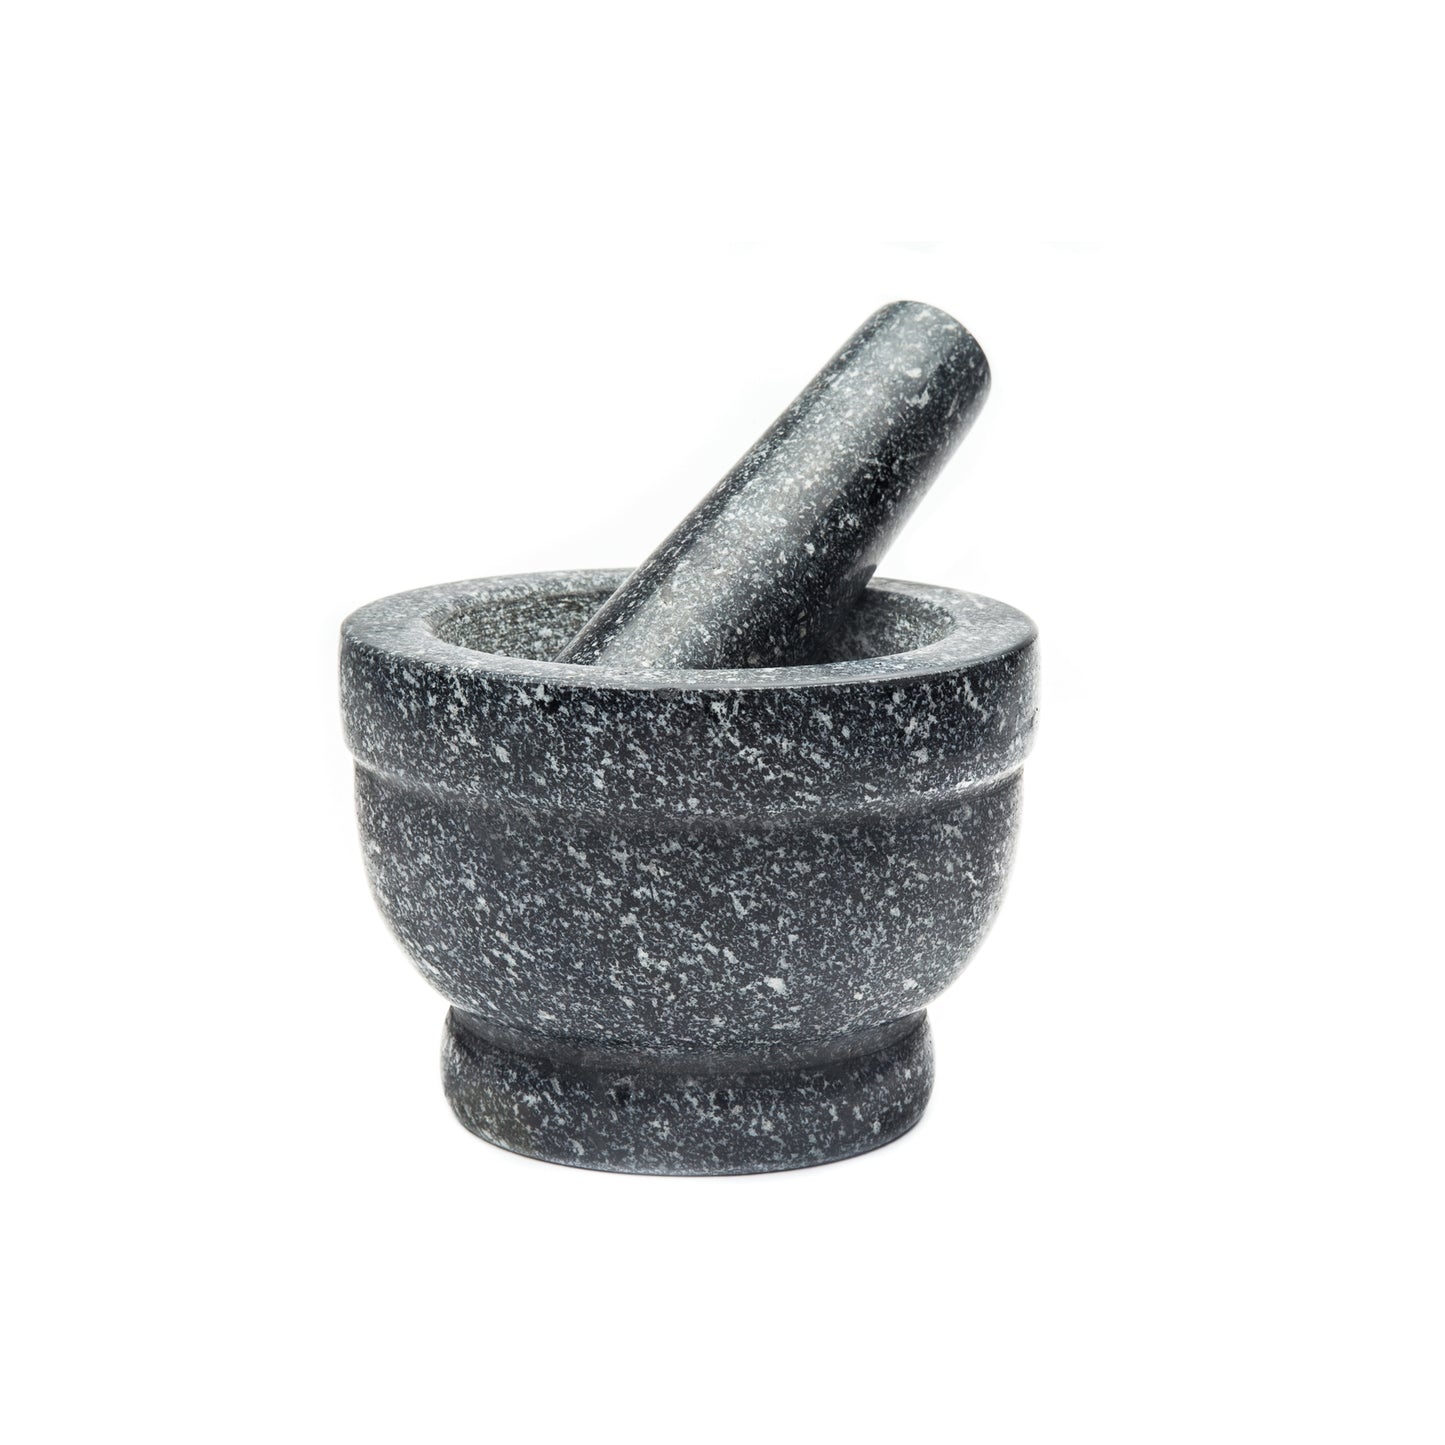 Granite Mortar & Pestle - 5.5 Inch